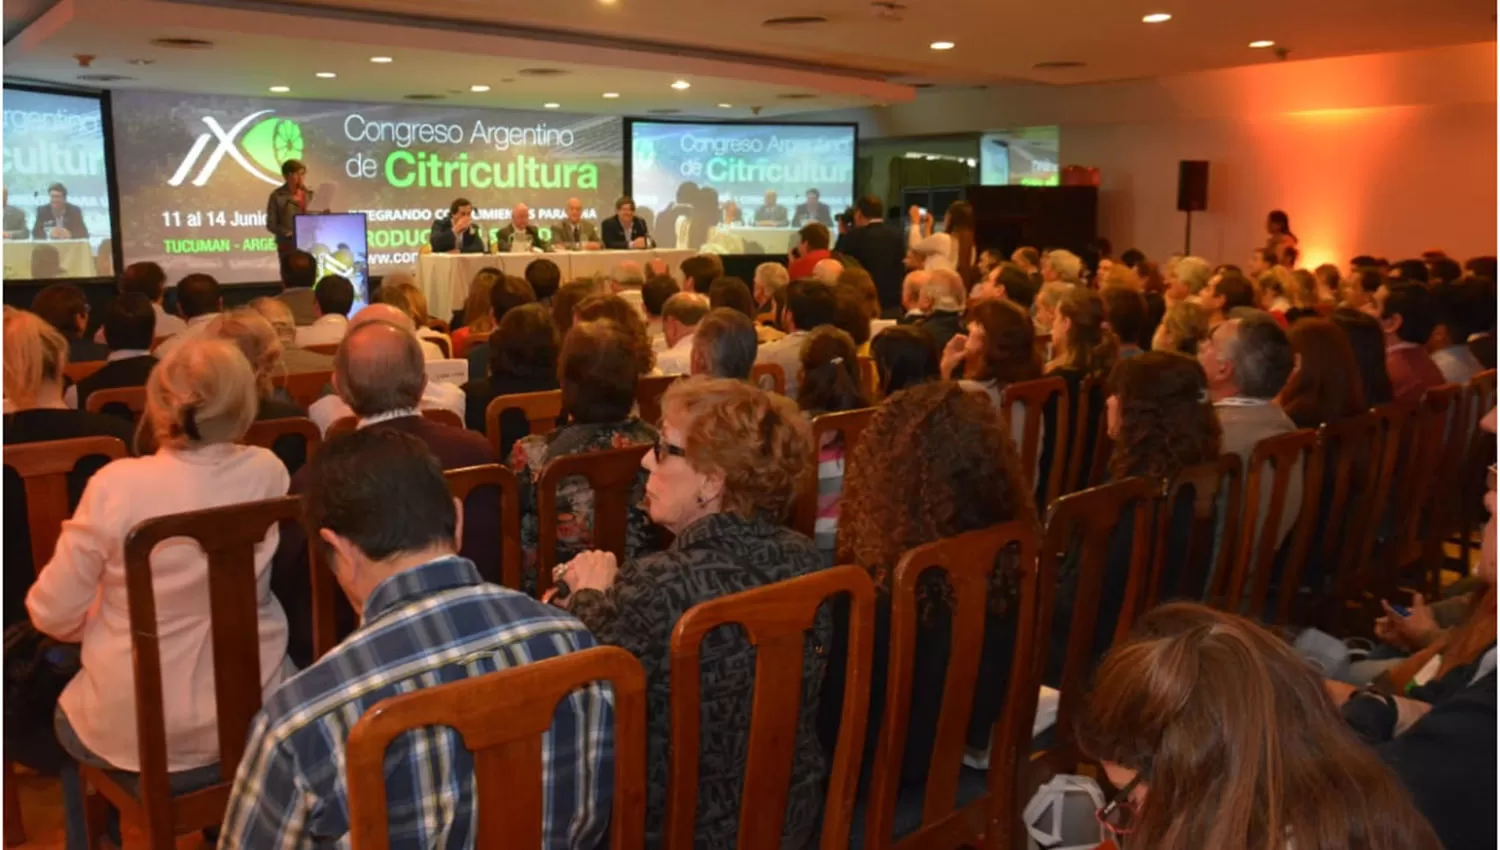 Comenzó hoy en Tucumán el “IX Congreso Argentino de Citricultura”